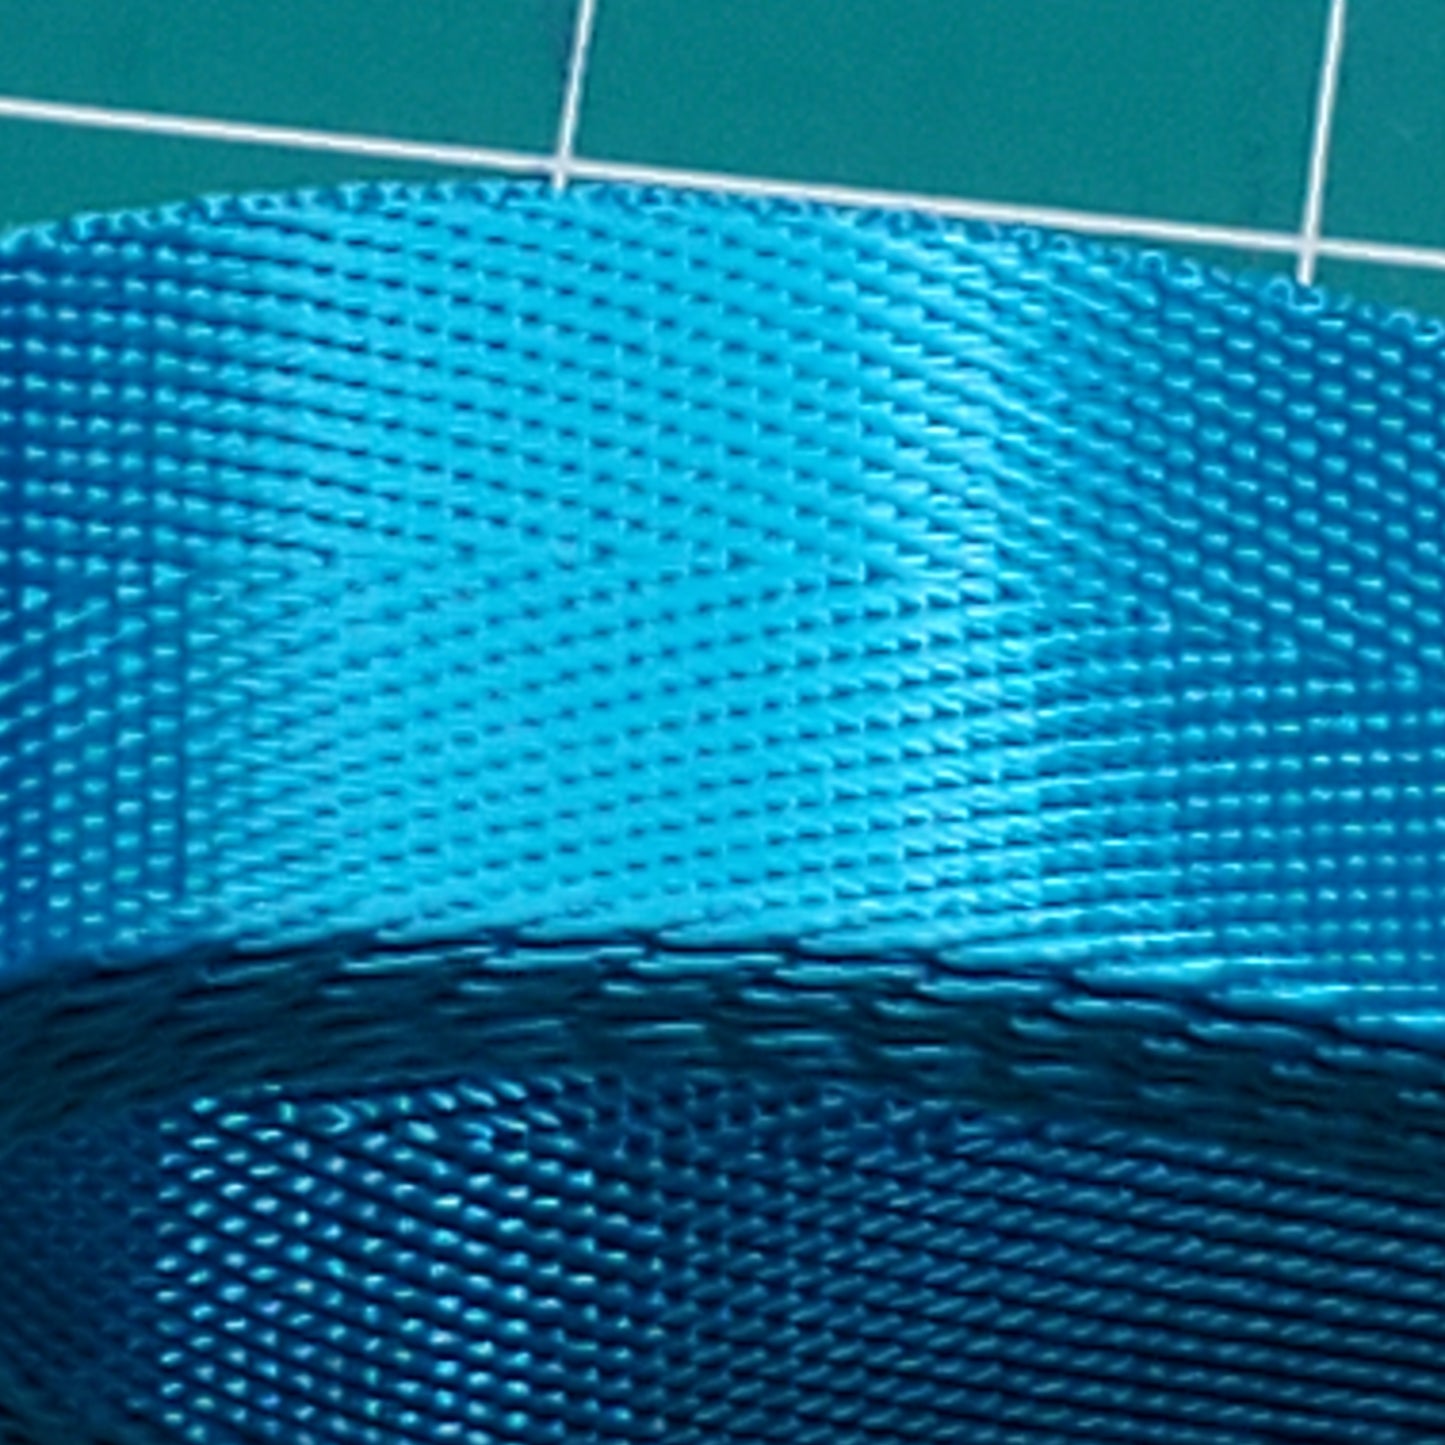 Seatbelt Webbing 1 inch (25mm) polyester webbing